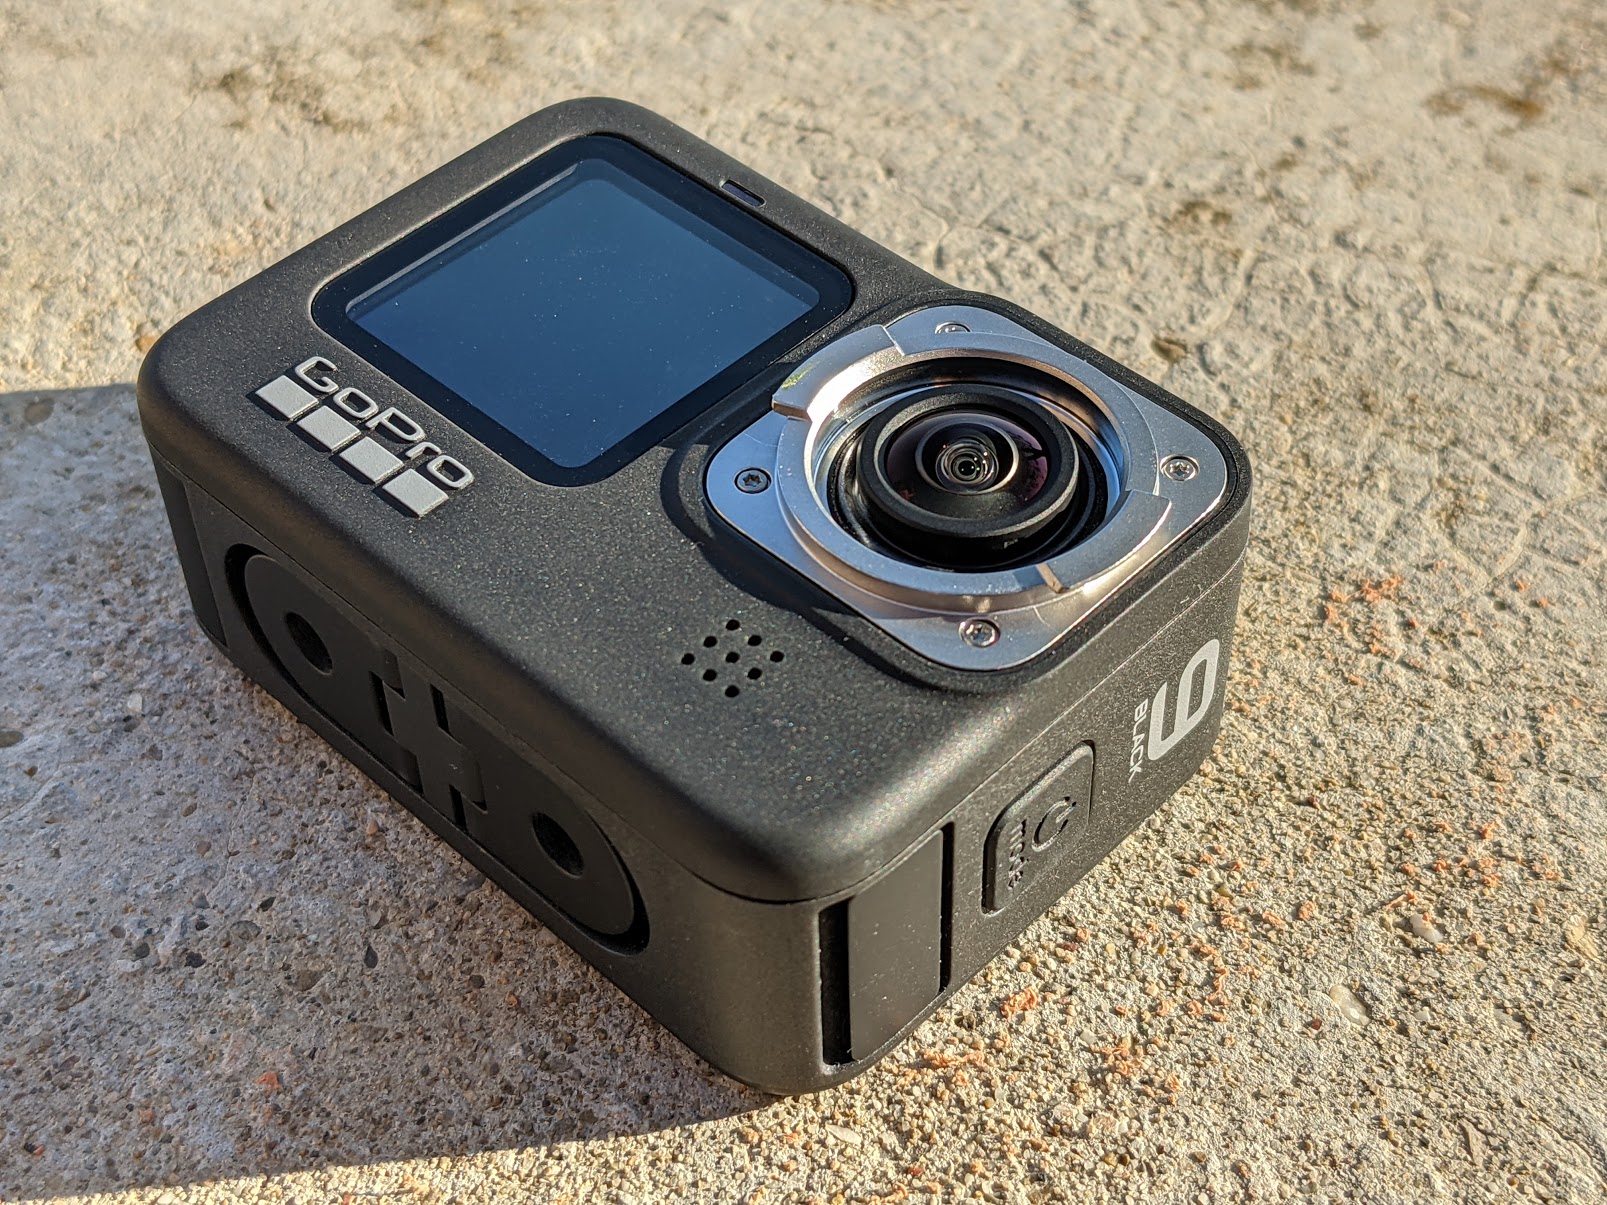 GoPro met à jour son action-cam Hero10 pour régler le problème de